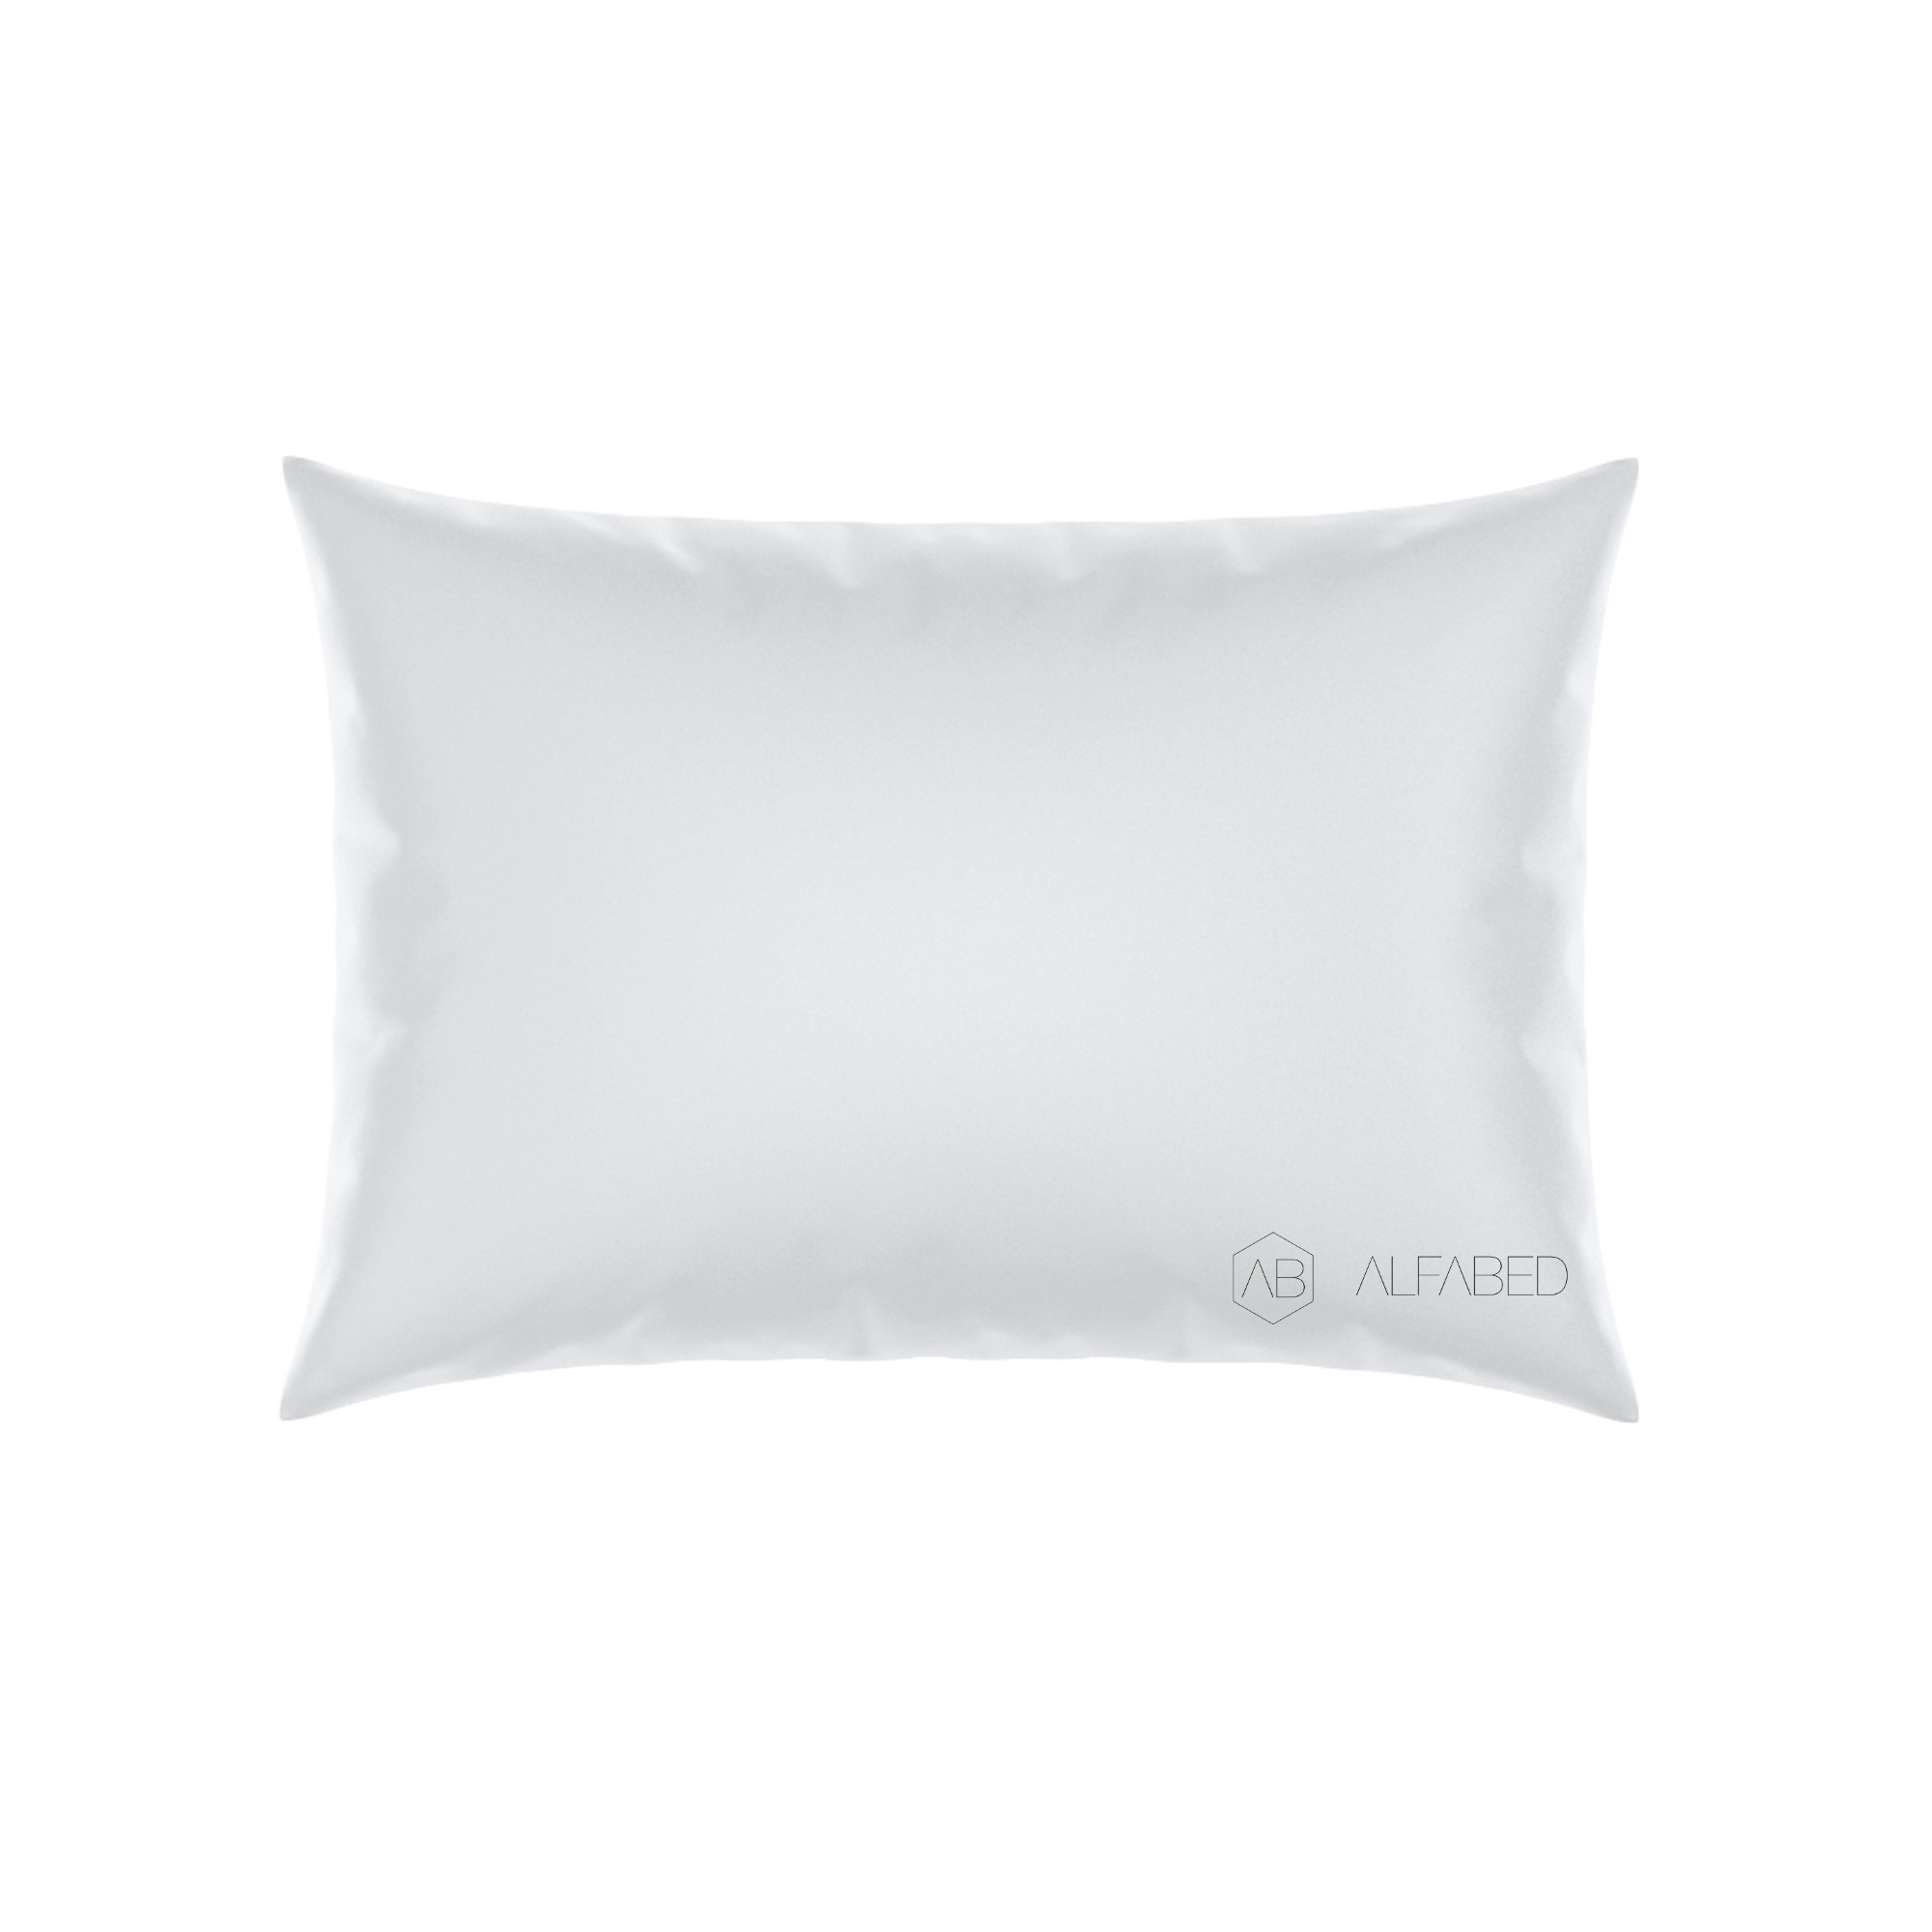 Pillow Case Premium Cotton Sateen White W Standart 4/0